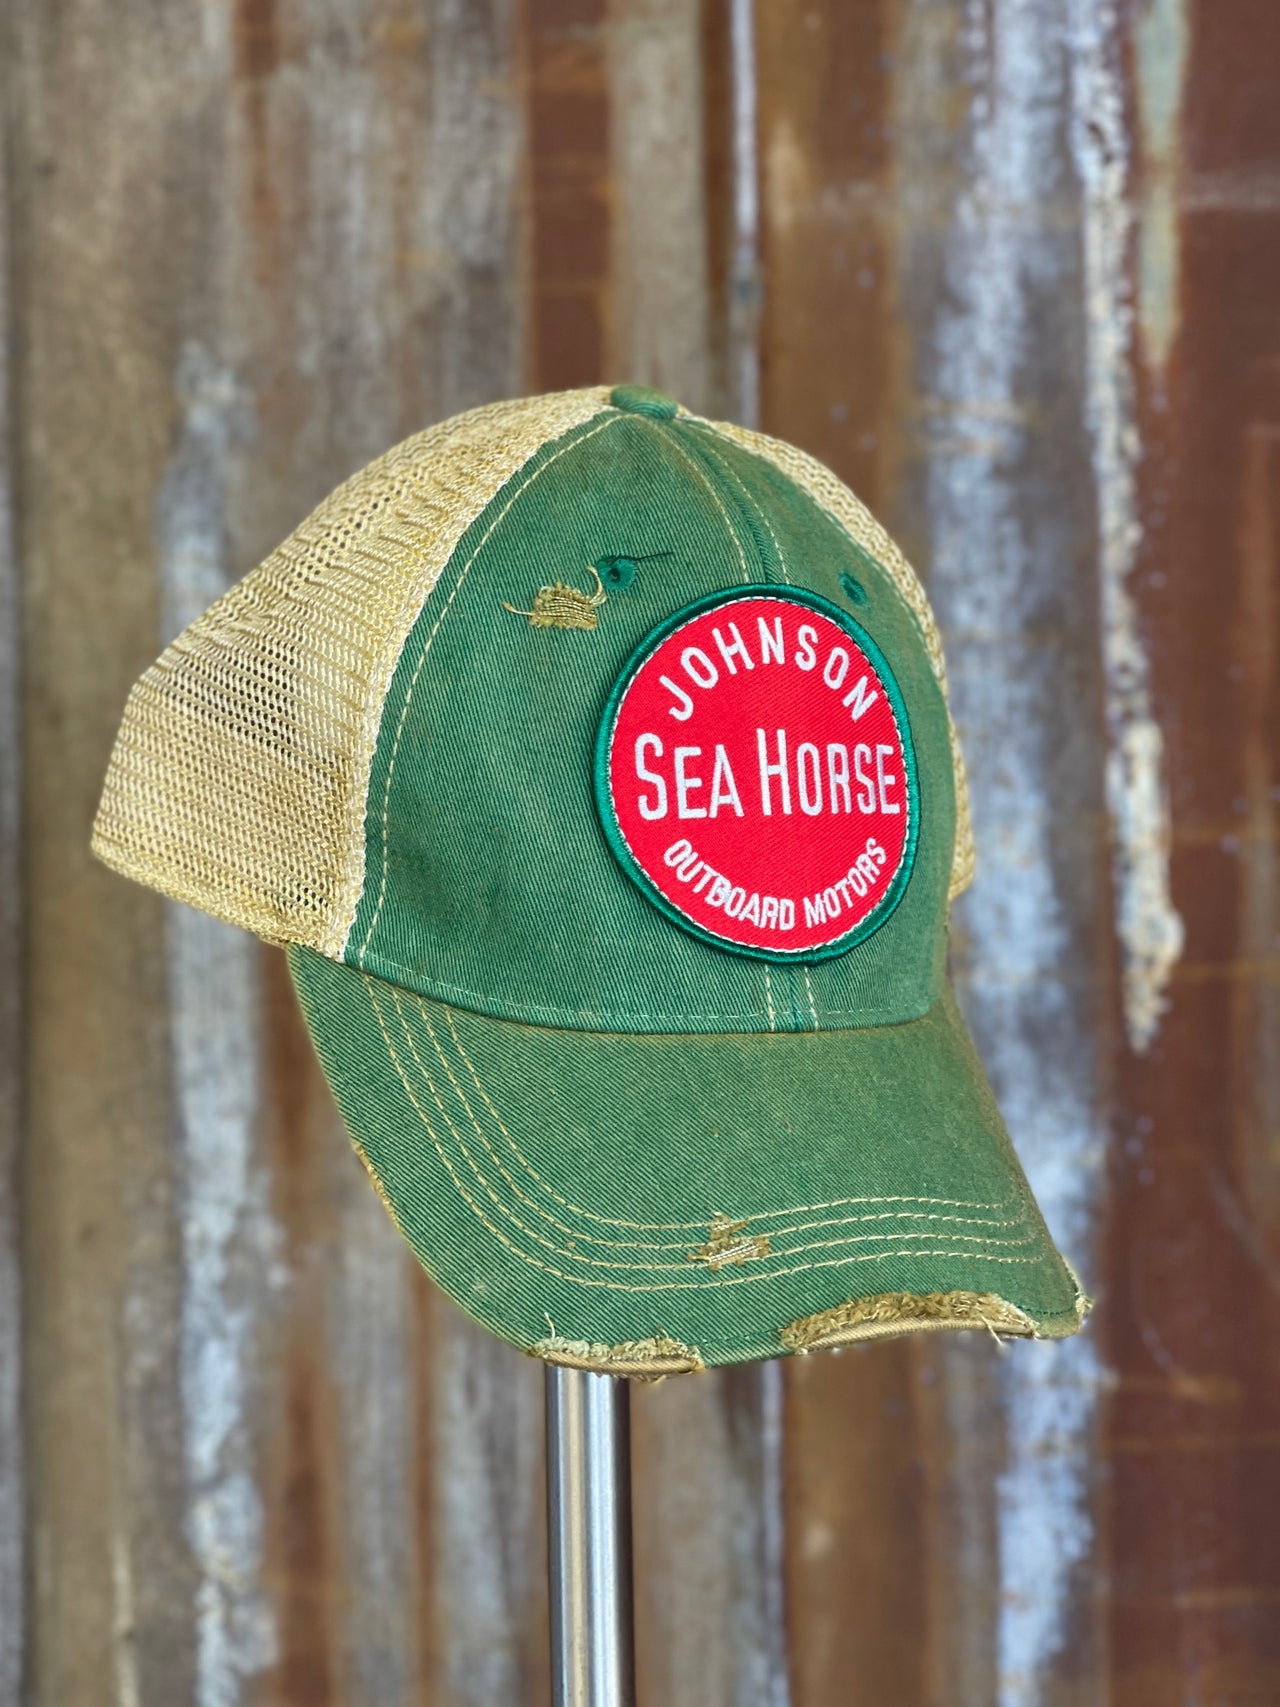 Youth Best Friend Trucker Hat - Kid's Fishing Hat